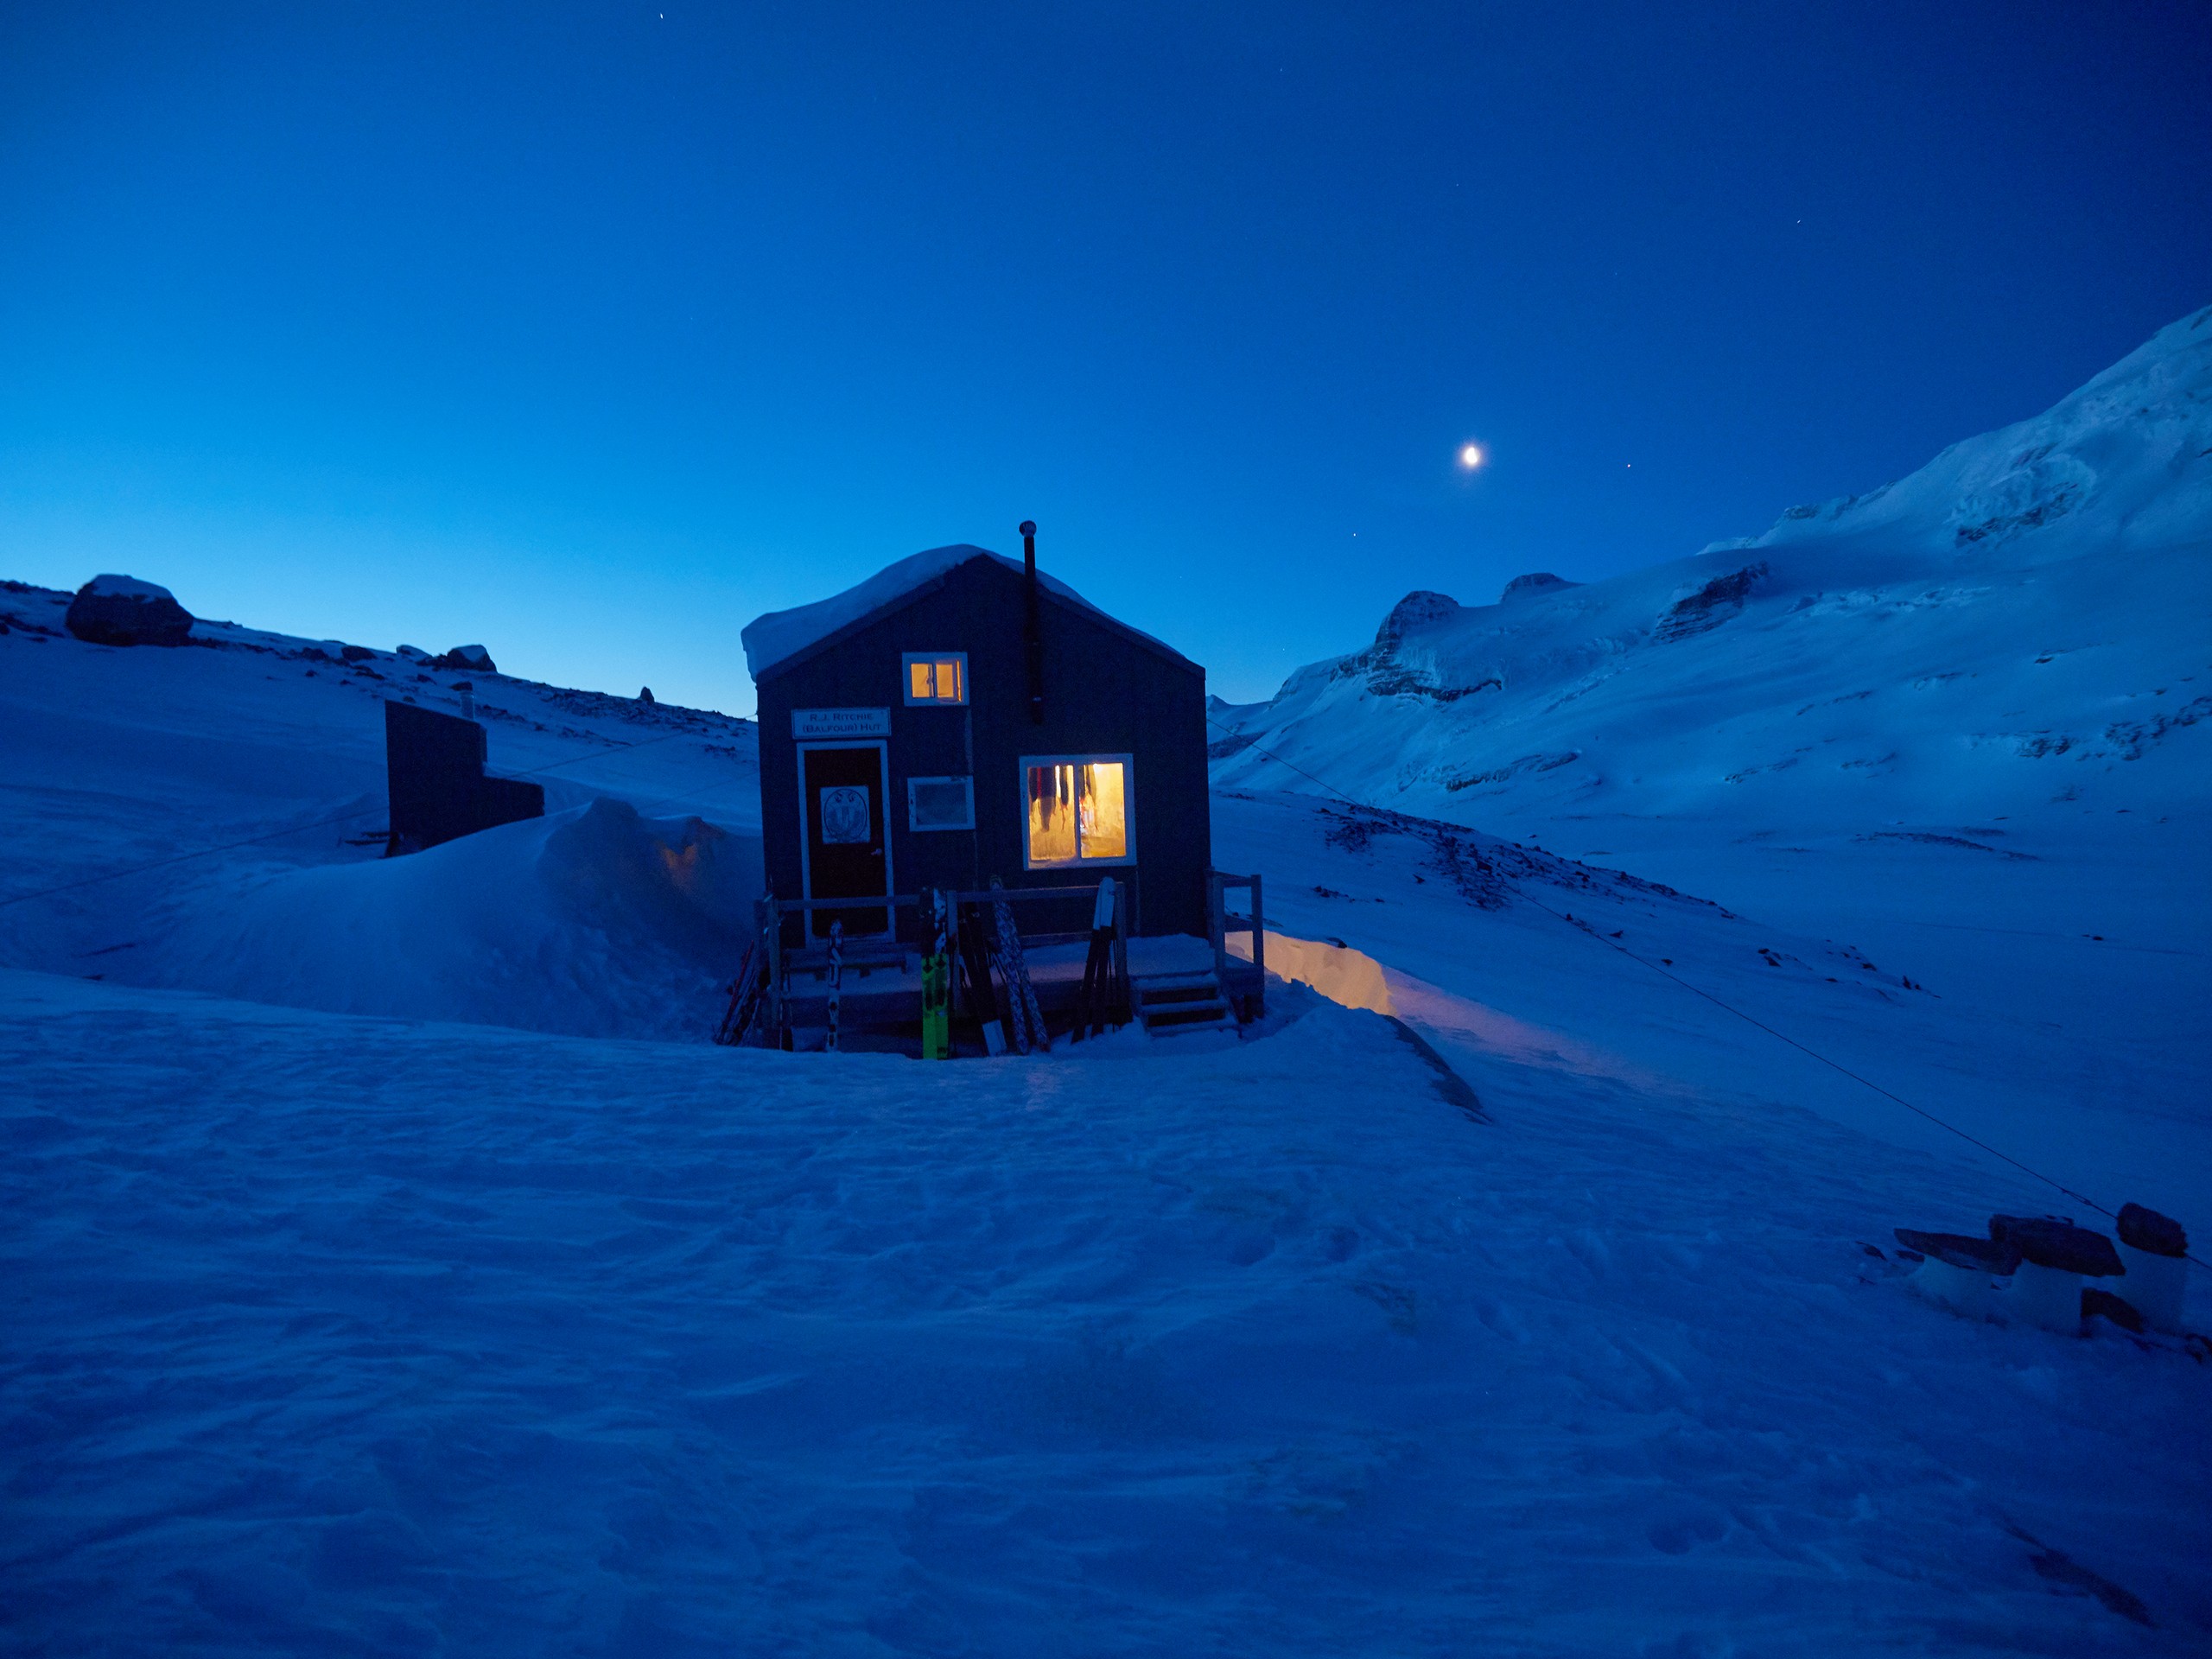 Hut on the Wapta Icefield